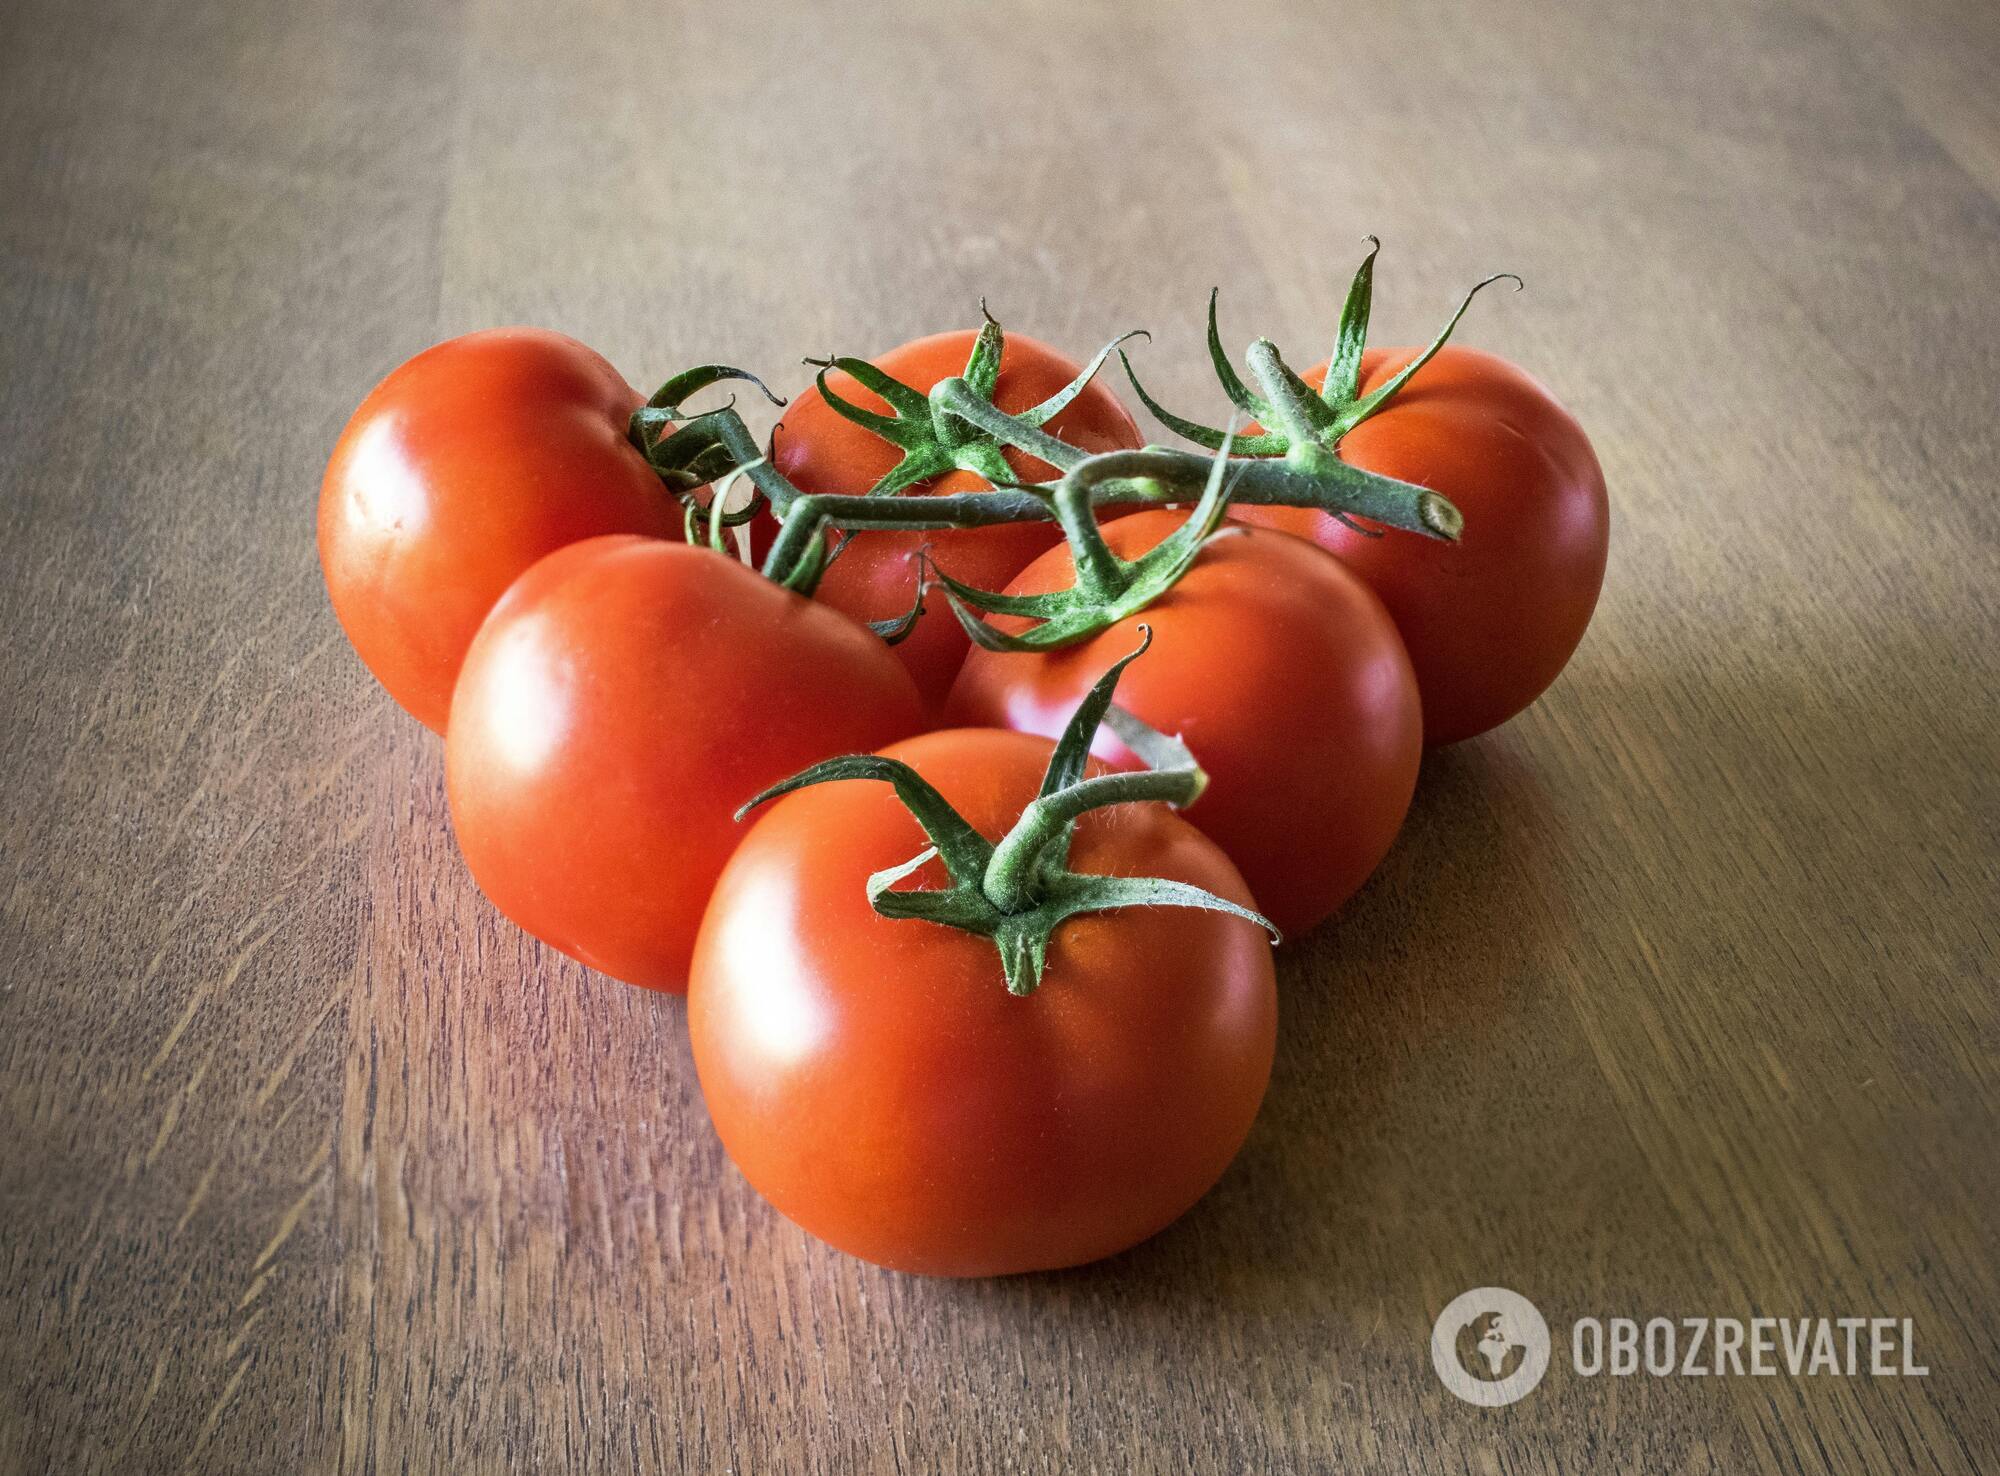 Jakie pomidory są najlepsze do konserwowania: mówimy o trzech głównych kryteriach